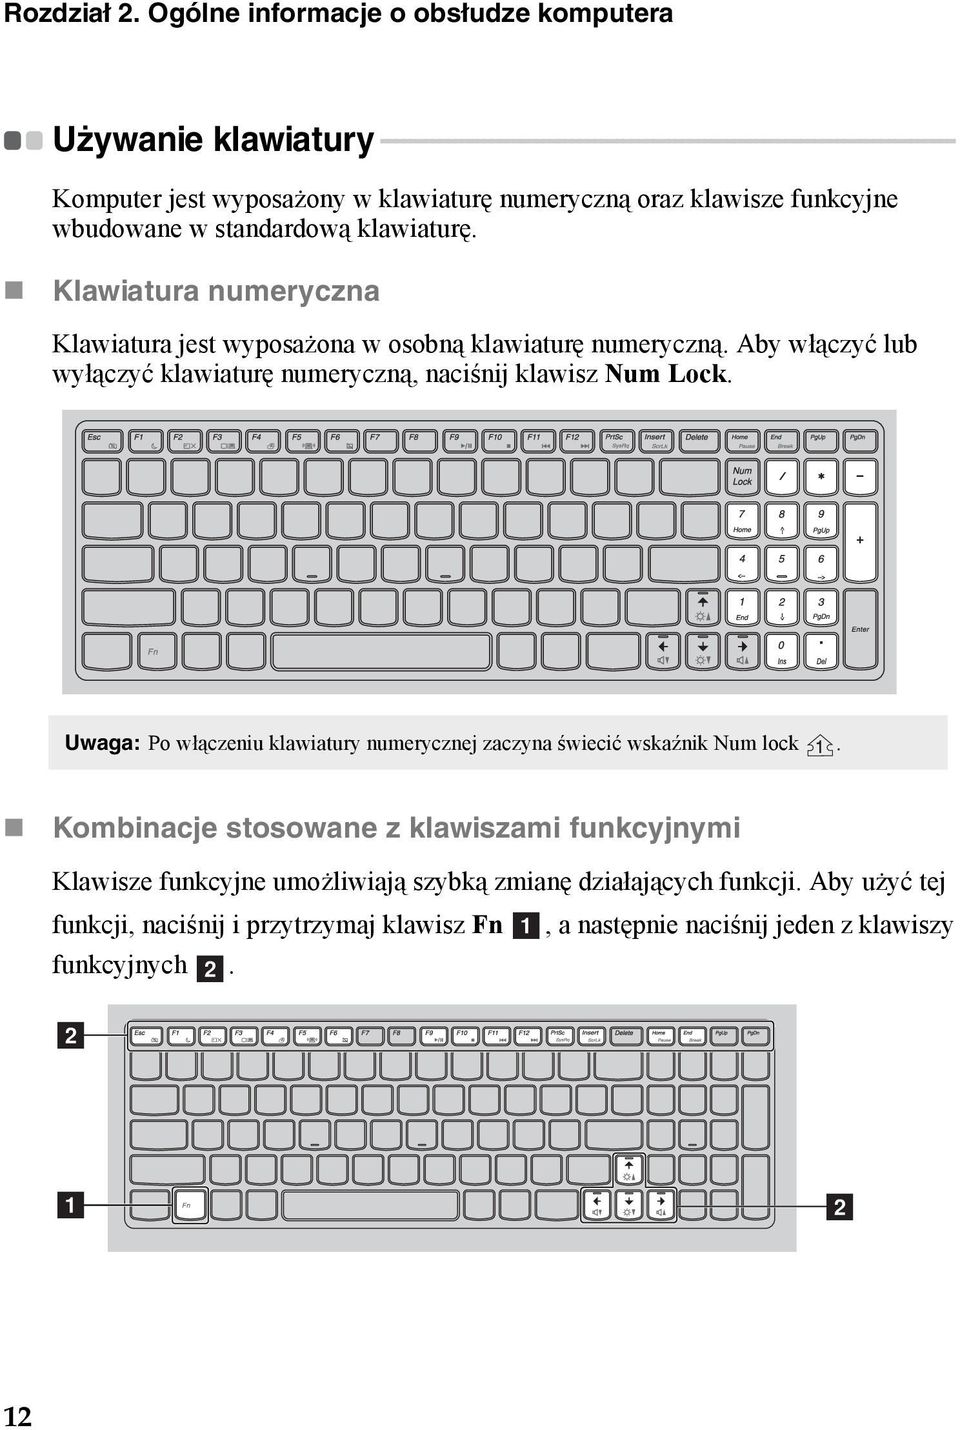 - - - - - - - - Komputer jest wyposażony w klawiaturę numeryczną oraz klawisze funkcyjne wbudowane w standardową klawiaturę.